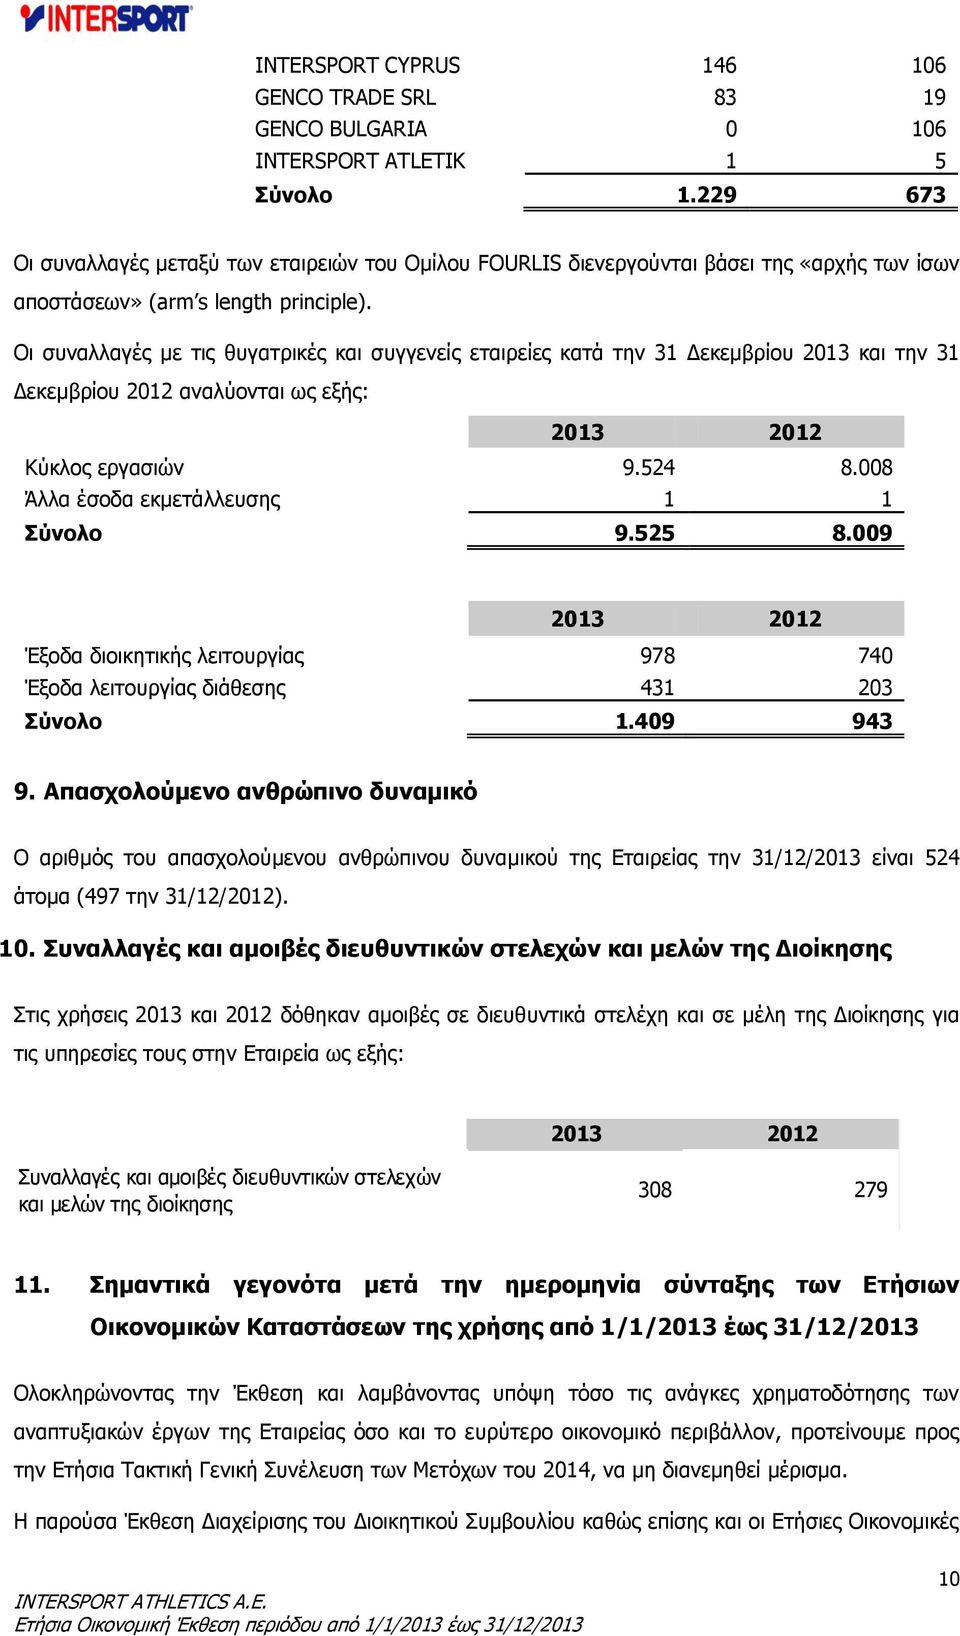 Οι συναλλαγές με τις θυγατρικές και συγγενείς εταιρείες κατά την 31 Δεκεμβρίου 2013 και την 31 Δεκεμβρίου 2012 αναλύονται ως εξής: 2013 2012 Κύκλος εργασιών 9.524 8.